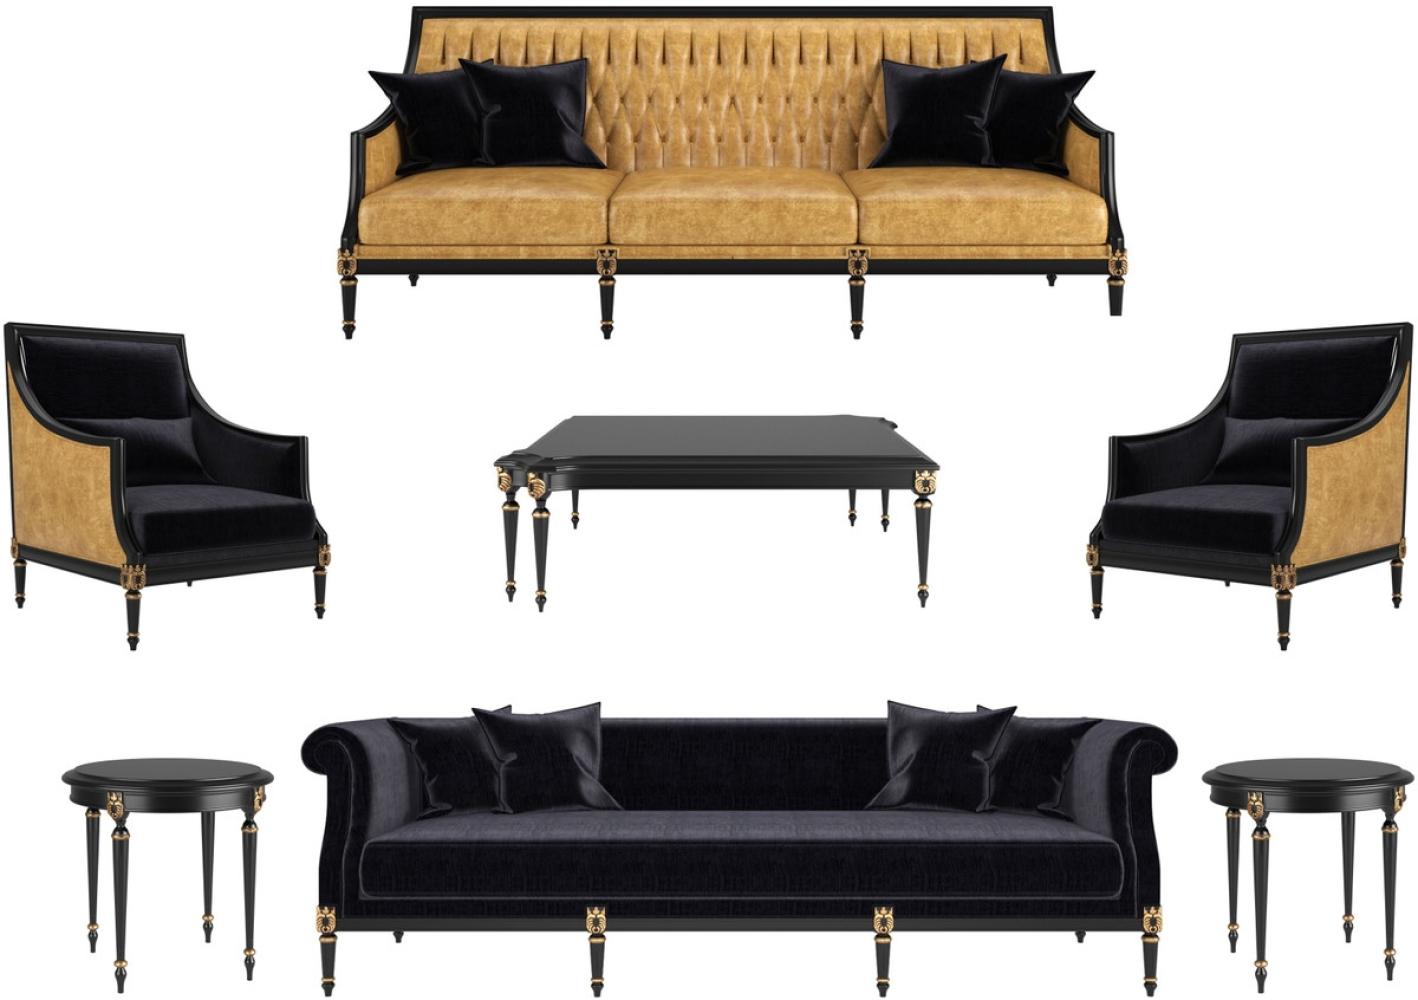 Casa Padrino Luxus Barock Wohnzimmer Set Gold / Schwarz / Antik Gold - 2 Sofas & 2 Sessel & 1 Couchtisch & 2 Beistelltische - Wohnzimmermöbel im Barockstil - Edle Barock Möbel Bild 1